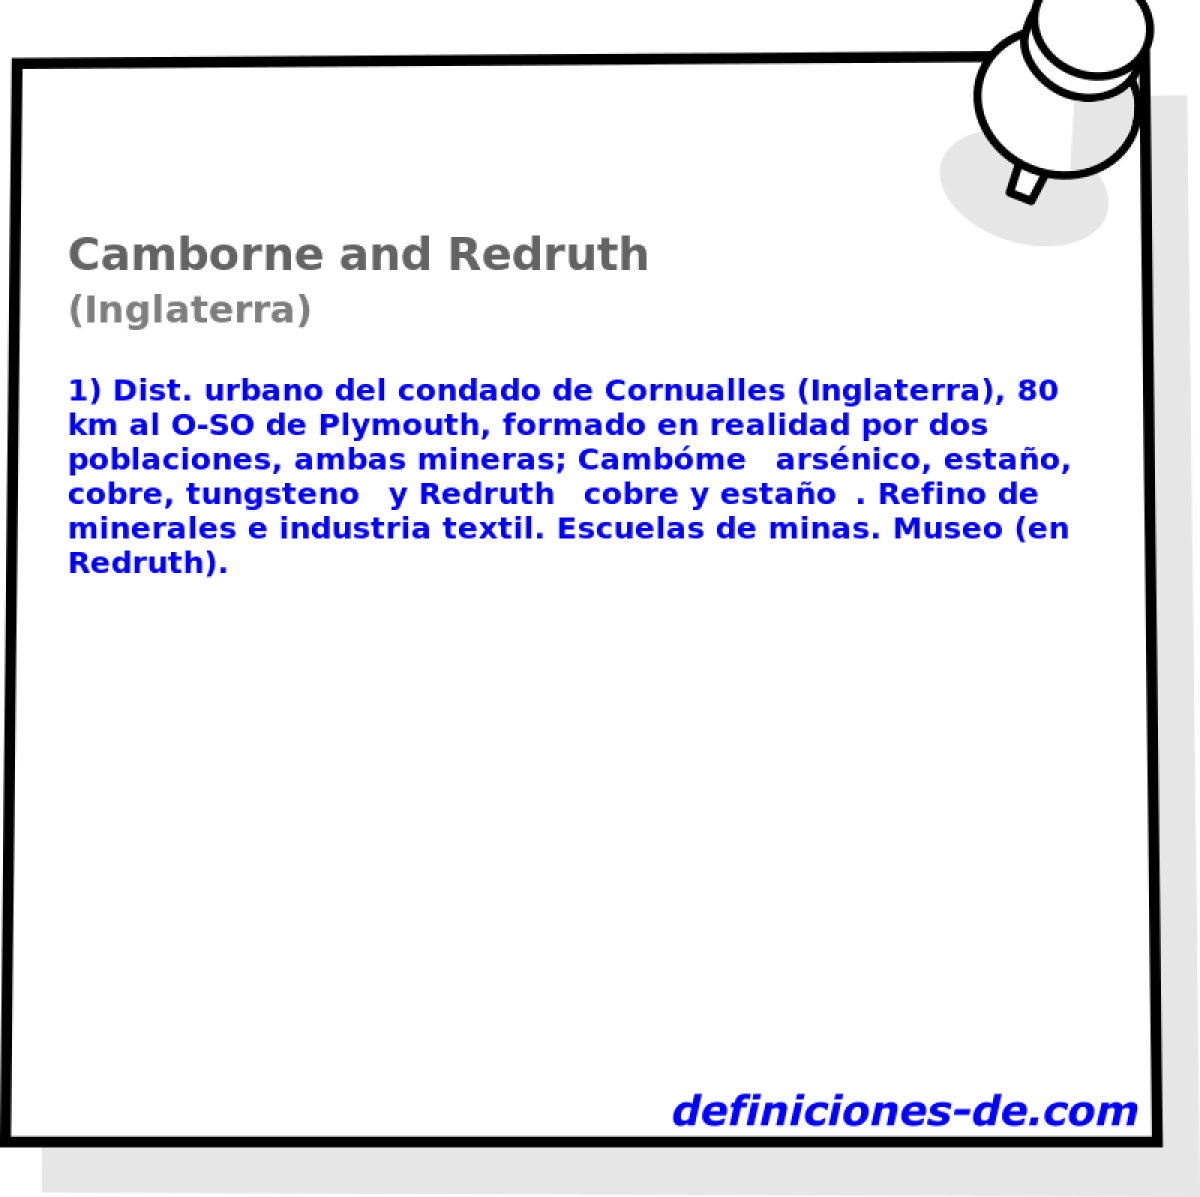 Camborne and Redruth (Inglaterra)